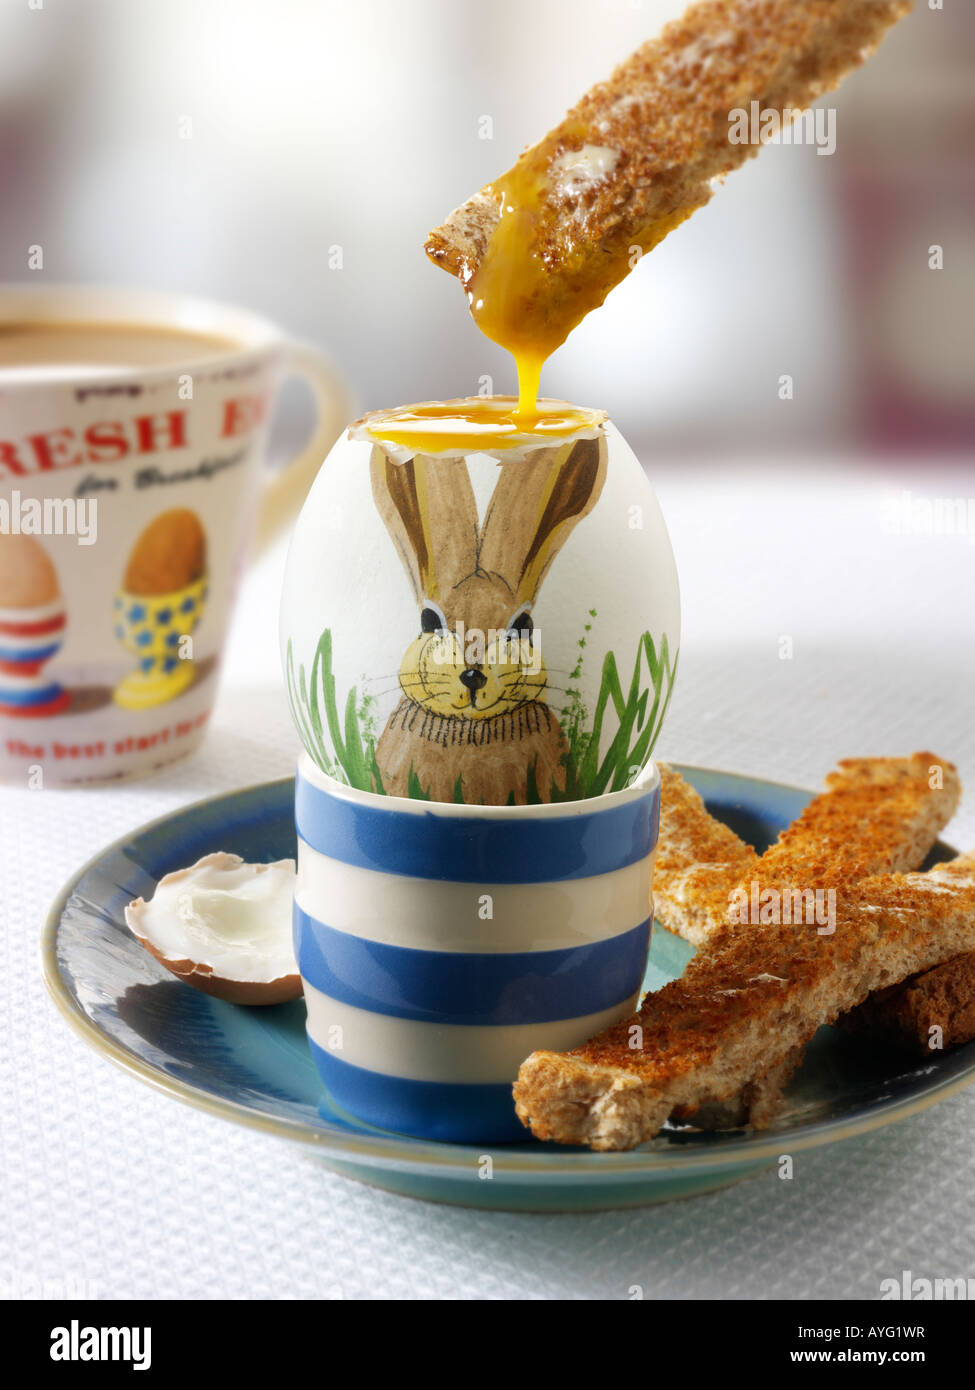 La décoration peinte à la main traditionnel lapin de Pâques à la coque d'oeuf dans un petit déjeuner avec des toasts d'être trempé dans l'oeuf Banque D'Images